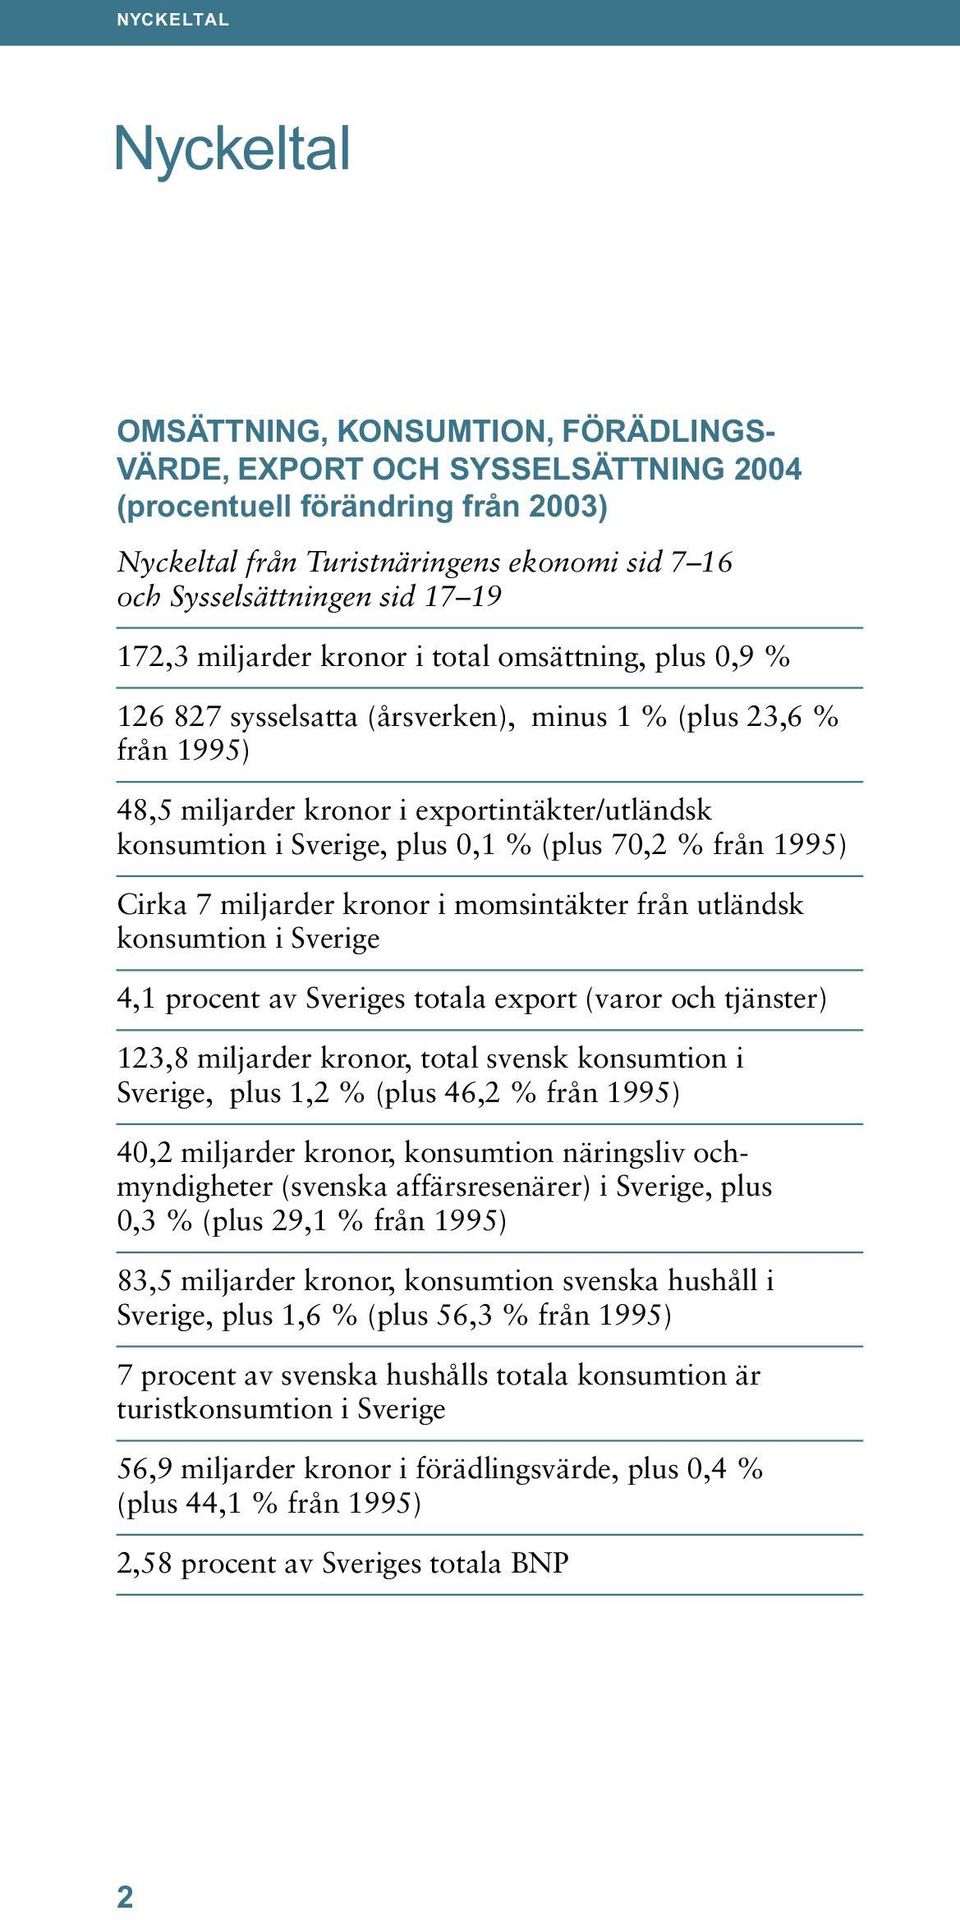 Sverige, plus 0,1 % (plus 70,2 % från 1995) Cirka 7 miljarder kronor i momsintäkter från utländsk konsumtion i Sverige 4,1 procent av Sveriges totala export (varor och tjänster) 123,8 miljarder